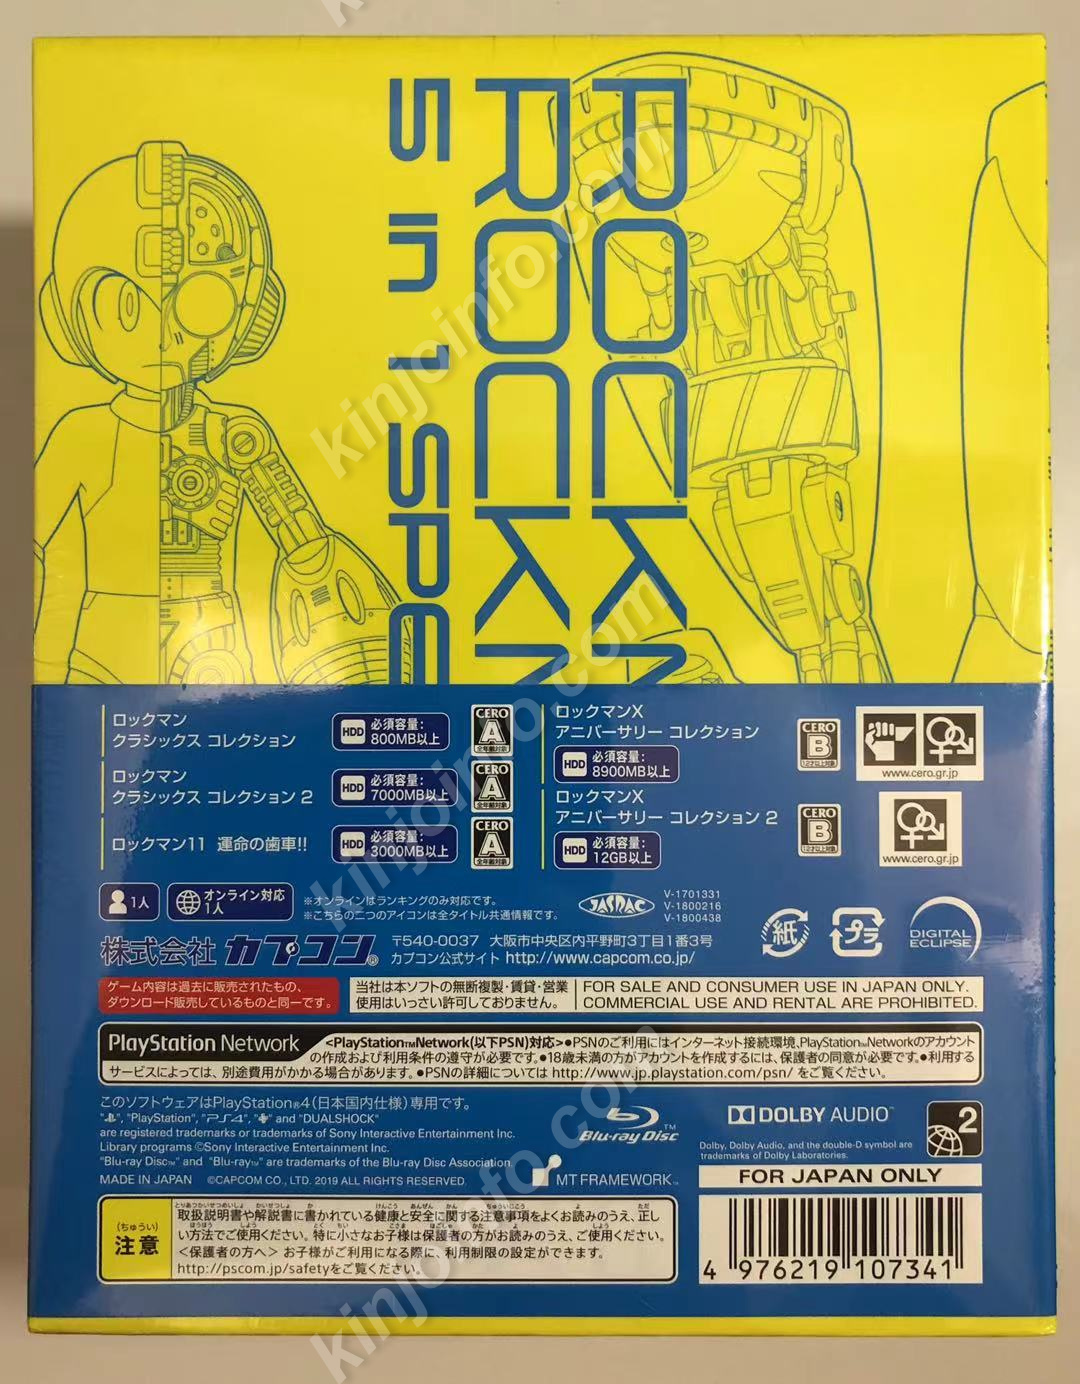 限定モデルや PS4 ロックマン&ロックマンX 5in1スペシャルBOX 家庭用ゲームソフト